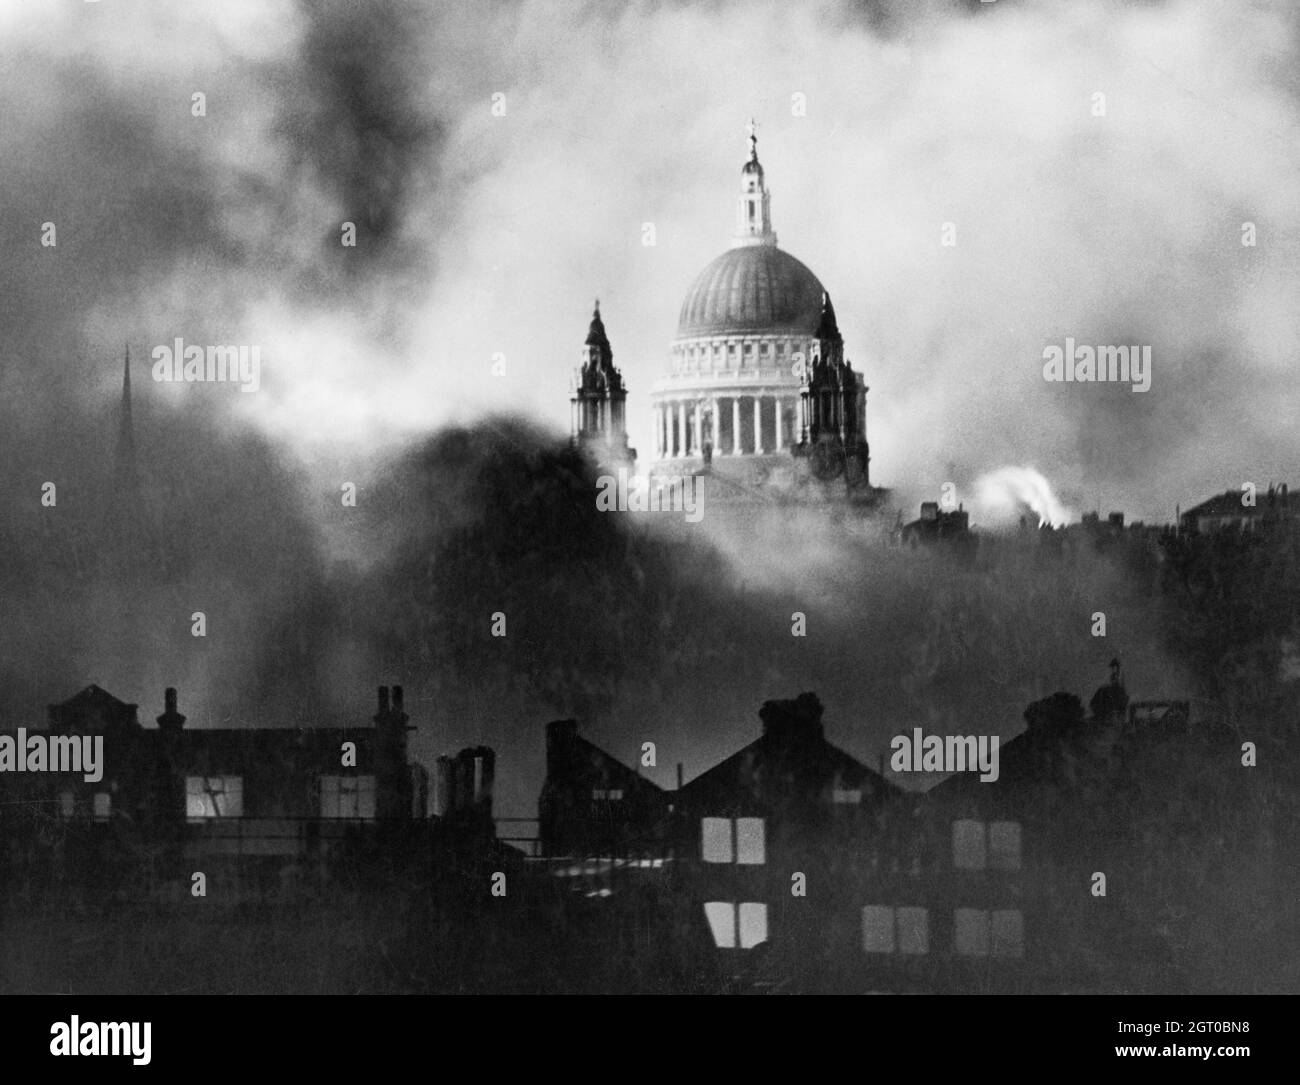 La cathédrale Saint-Paul s'élève au-dessus de la fumée des bâtiments en feu lors d'une raid aérien le 29/30 décembre 1940 Banque D'Images